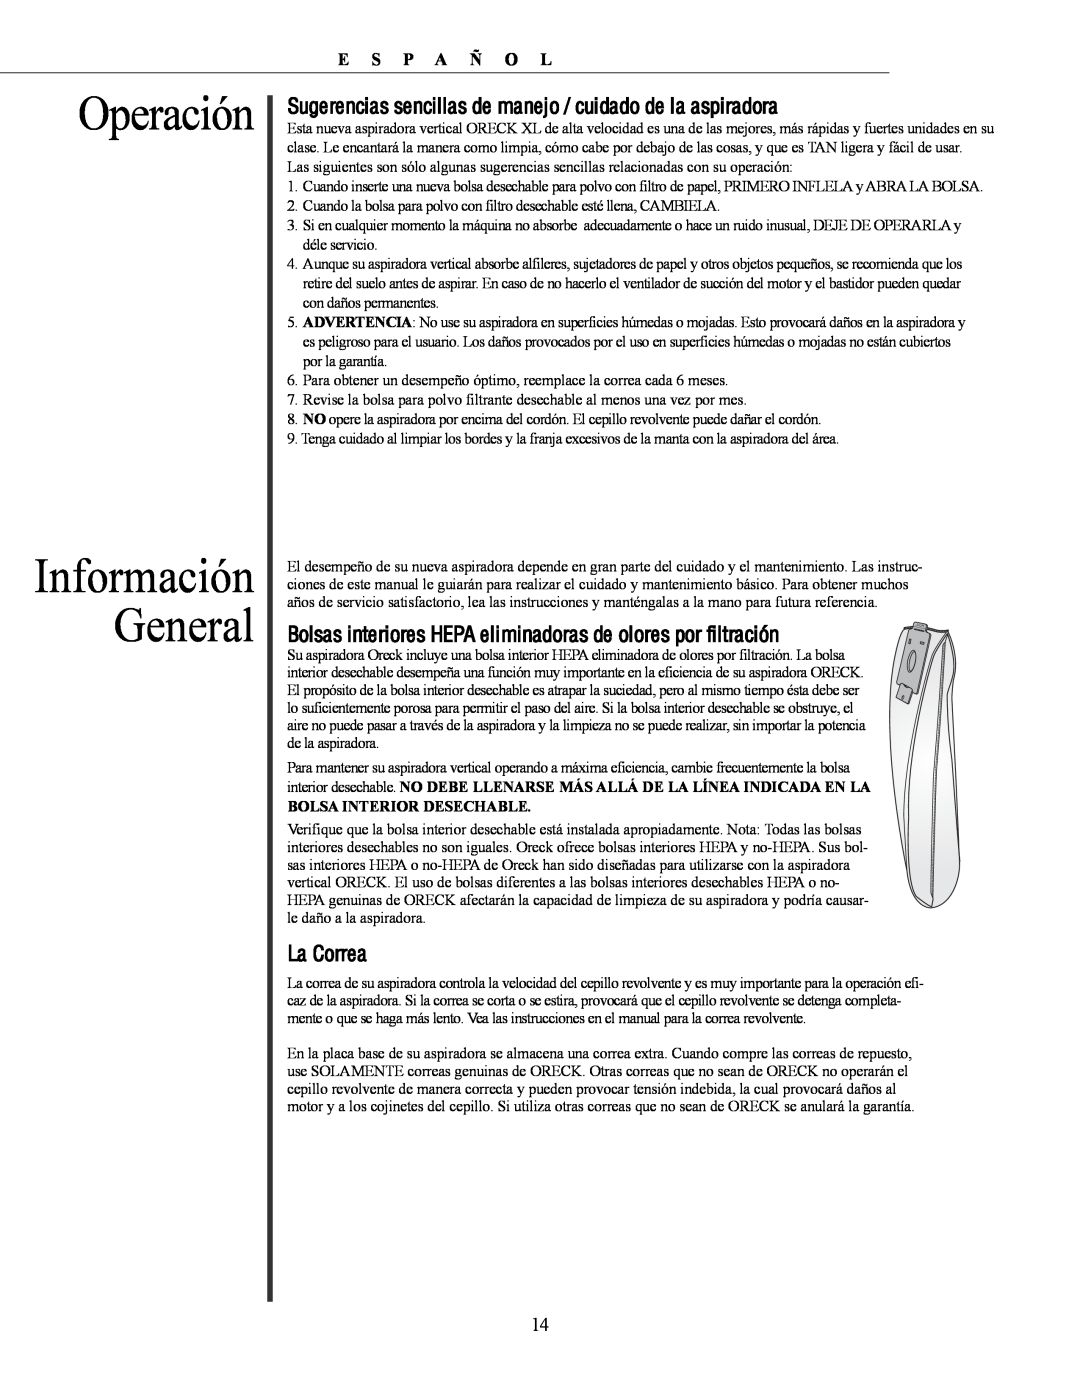 Oreck U4300 manual Información General, Operación 